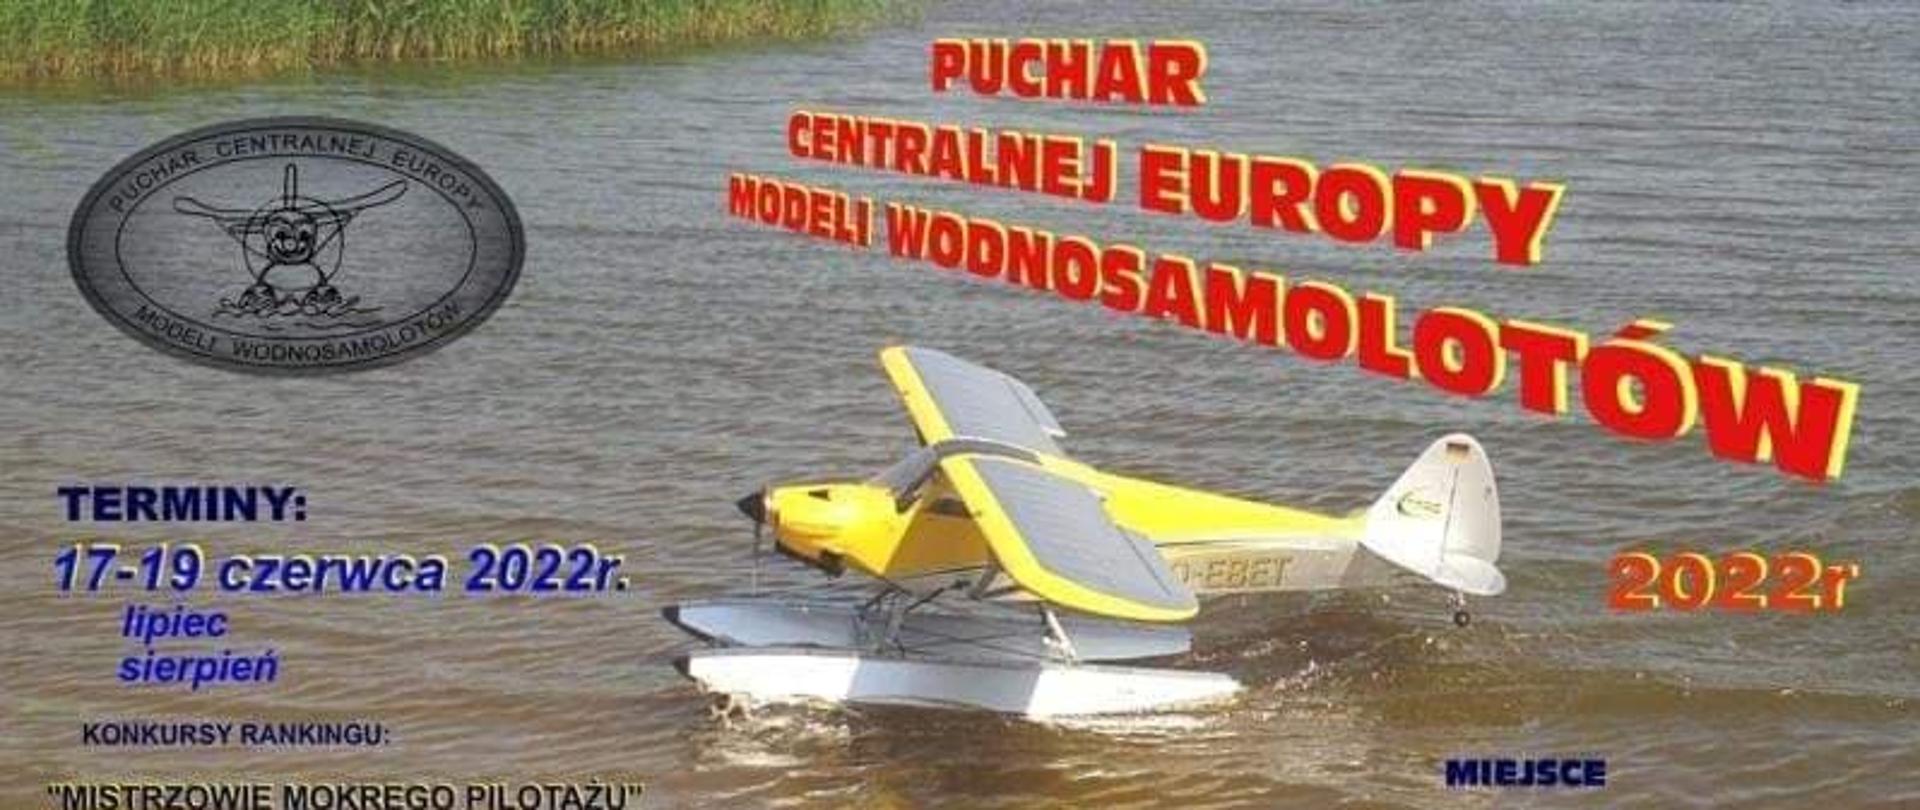 Puchar Centralnej Europy Modeli Wodnosamolotów